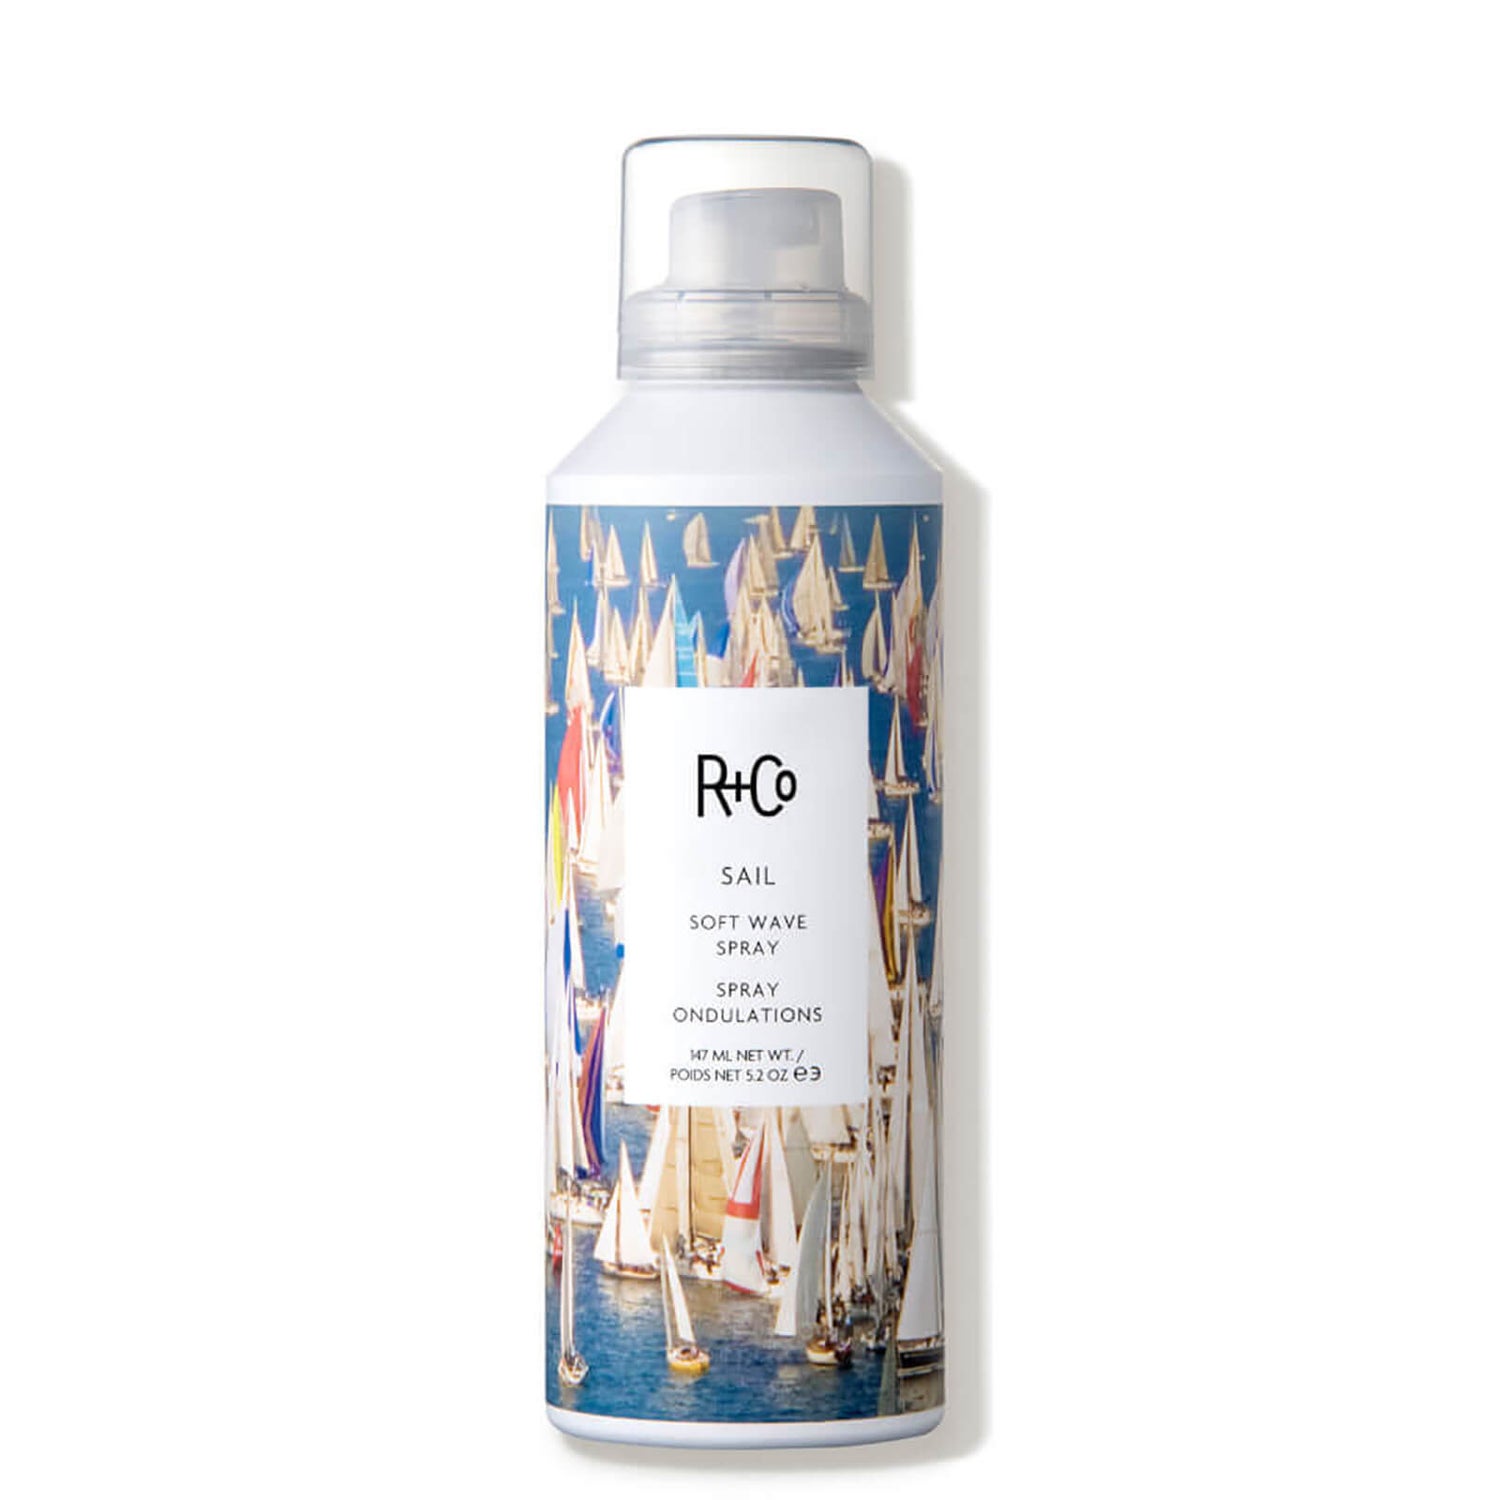 R+Co SAIL Soft Wave Spray (5.2 oz.)